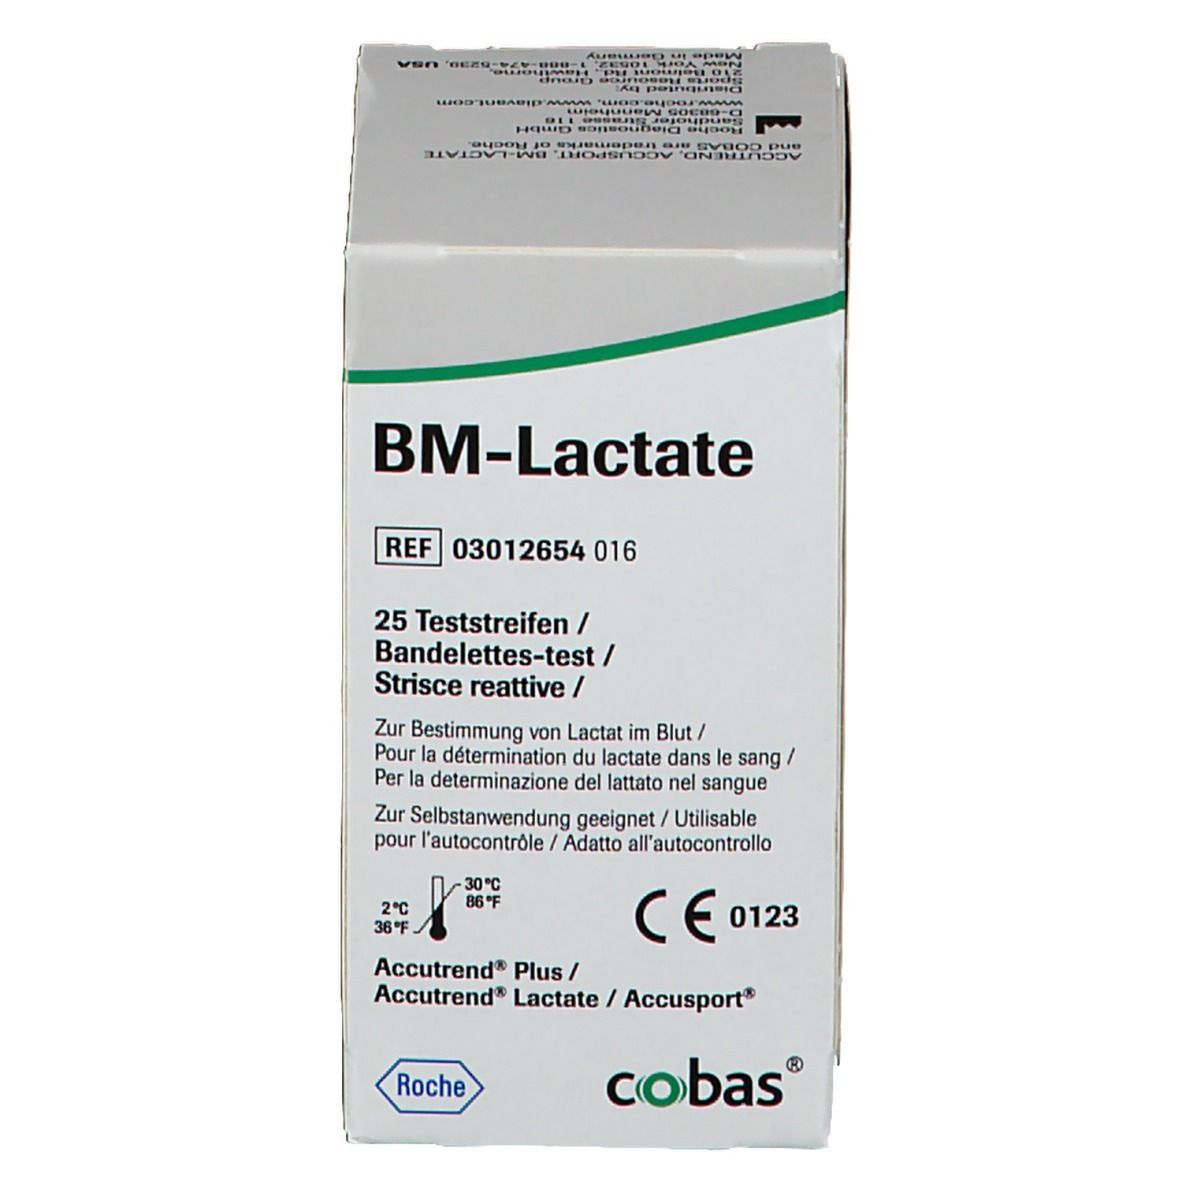 BM-Lactate Teststreifen für Accutrend® Messgeräte